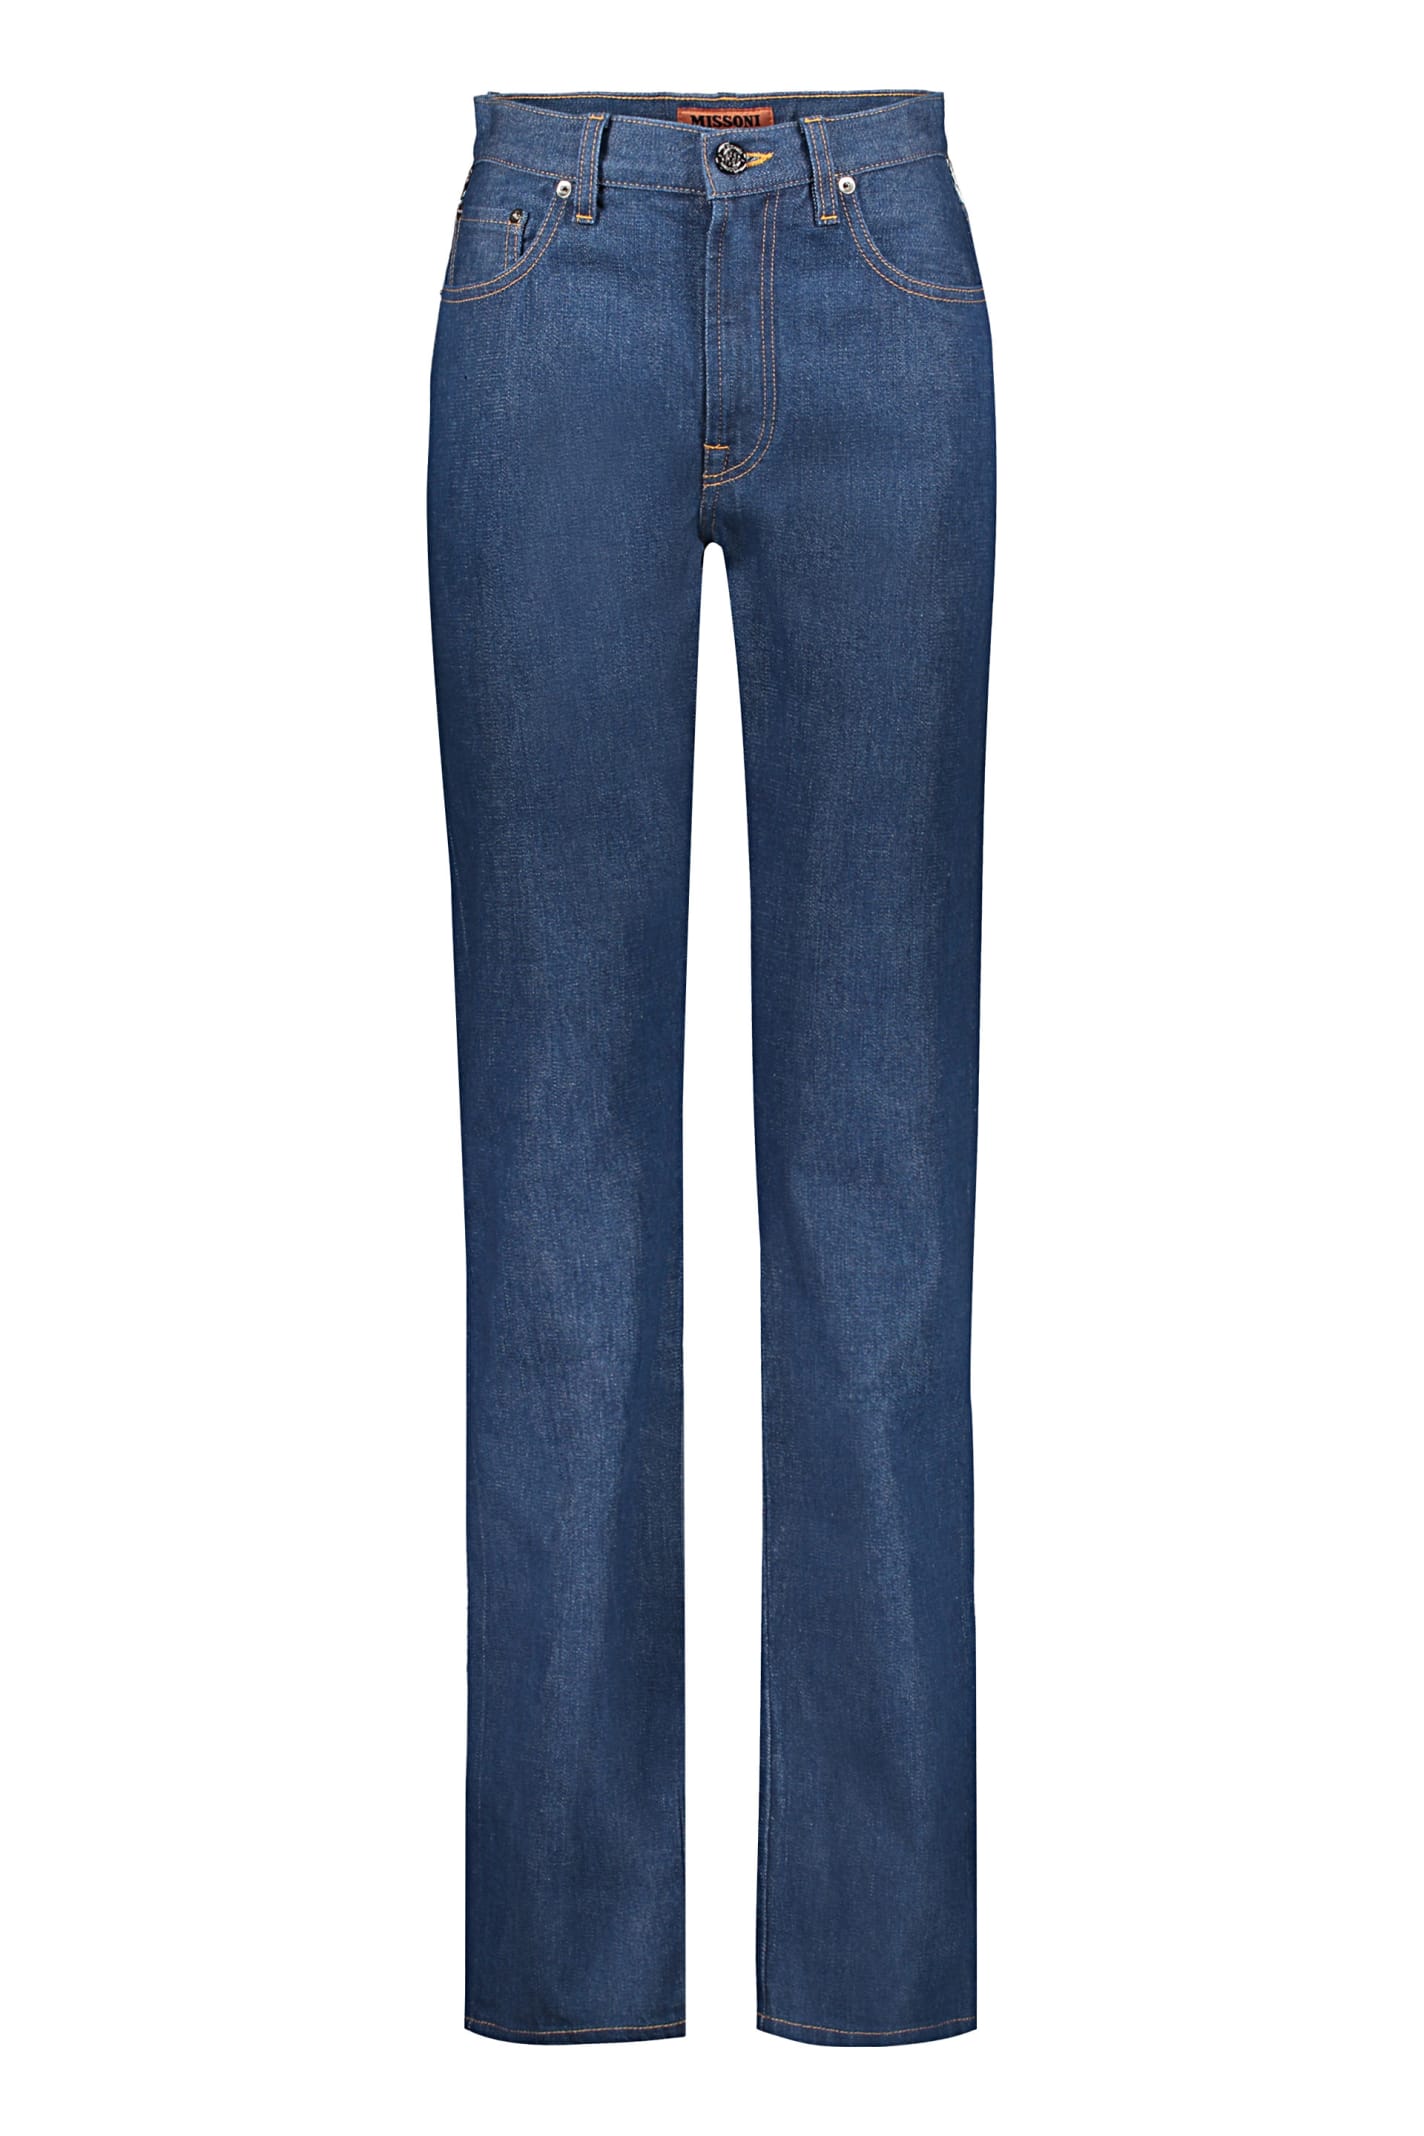 Missoni 5-pocket Jeans In Denim